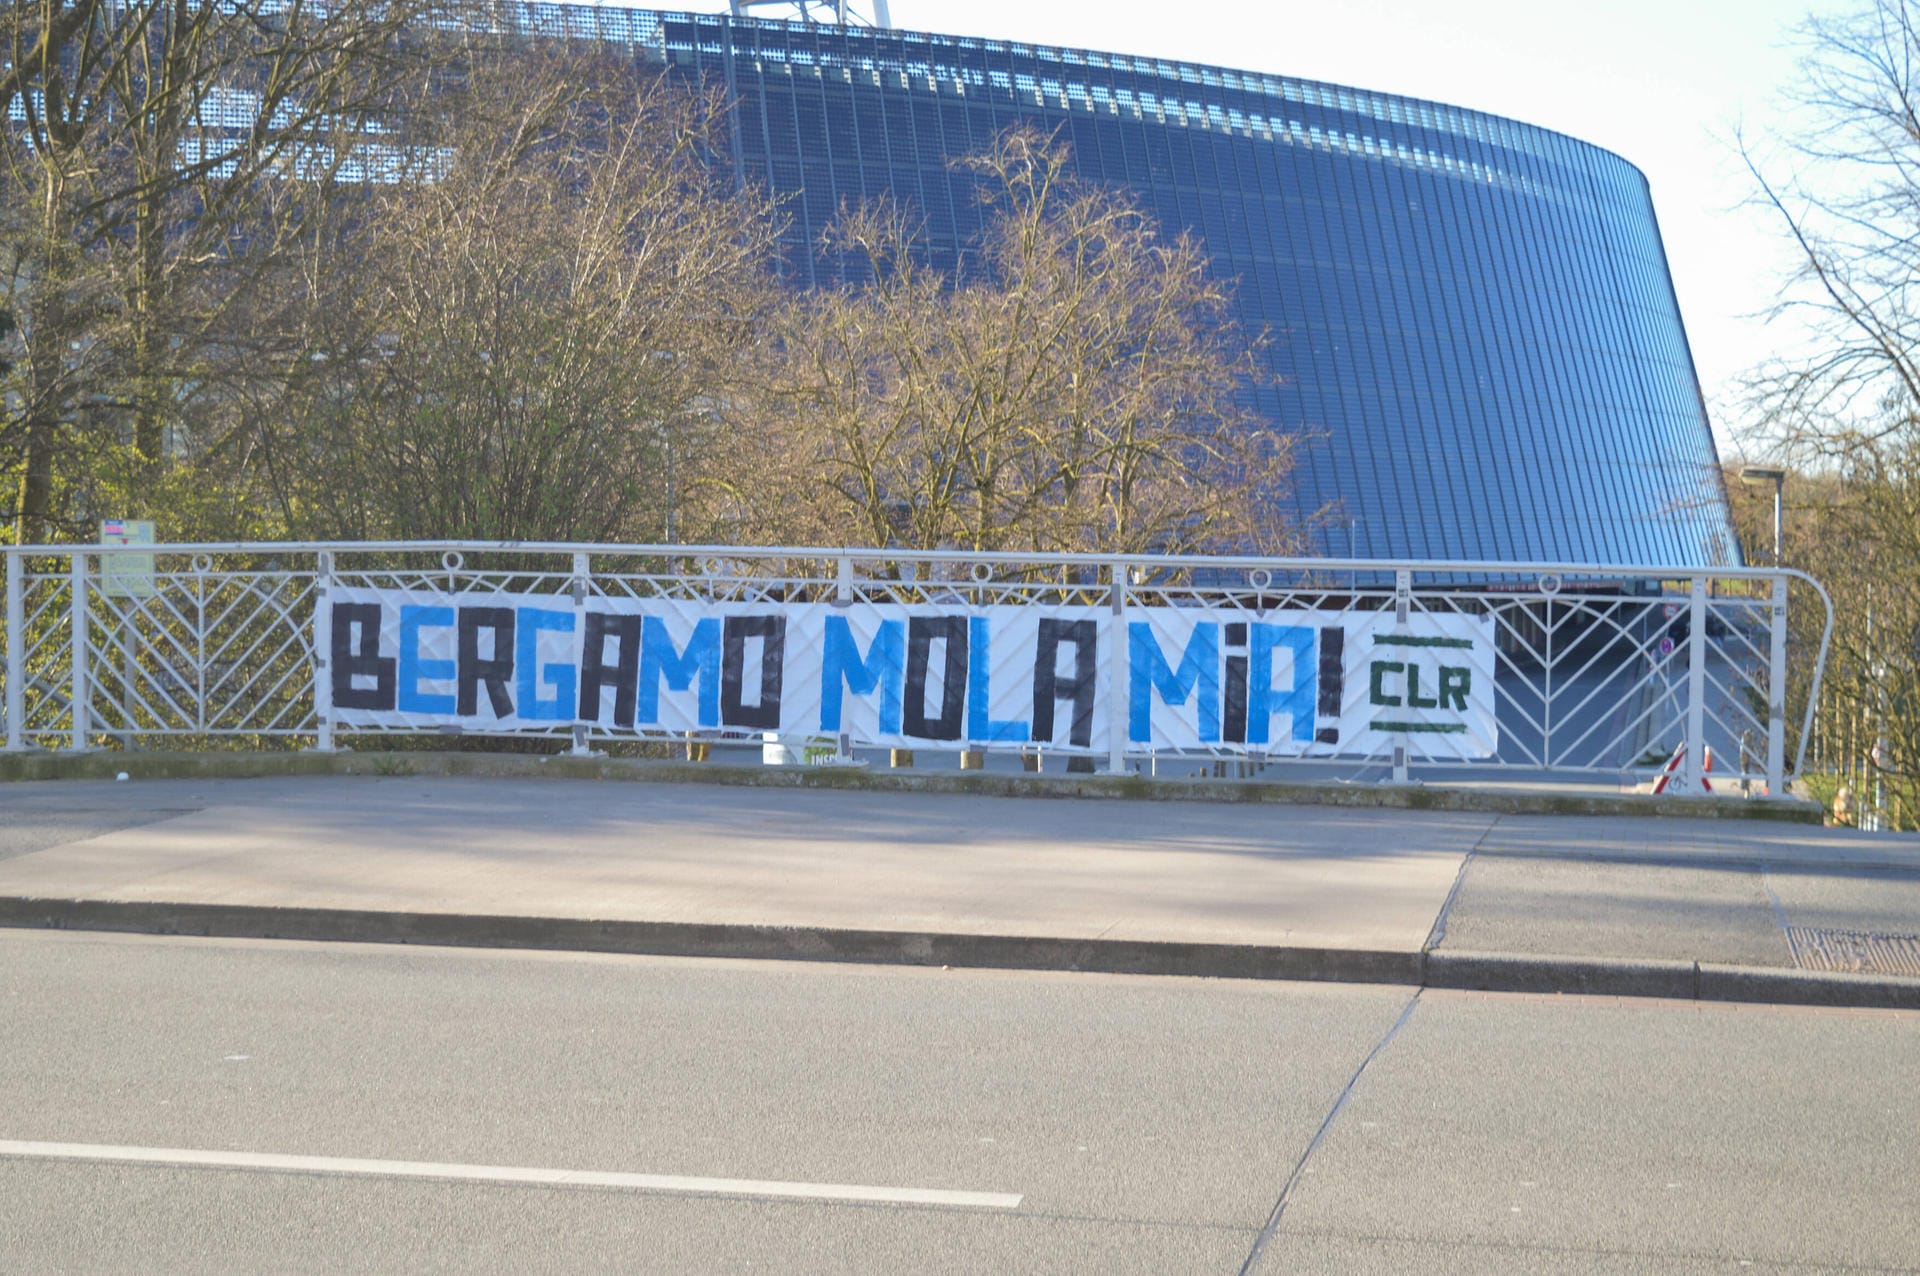 In Bremen hängt zudem ein Plakat vor dem Stadion, das Unterstützung und Grüße in die Lombardei nach Italien ausdrückt. "Bergamo mola mia" steht dort, was Italienisch ist für "Bergamo, gib nicht auf".